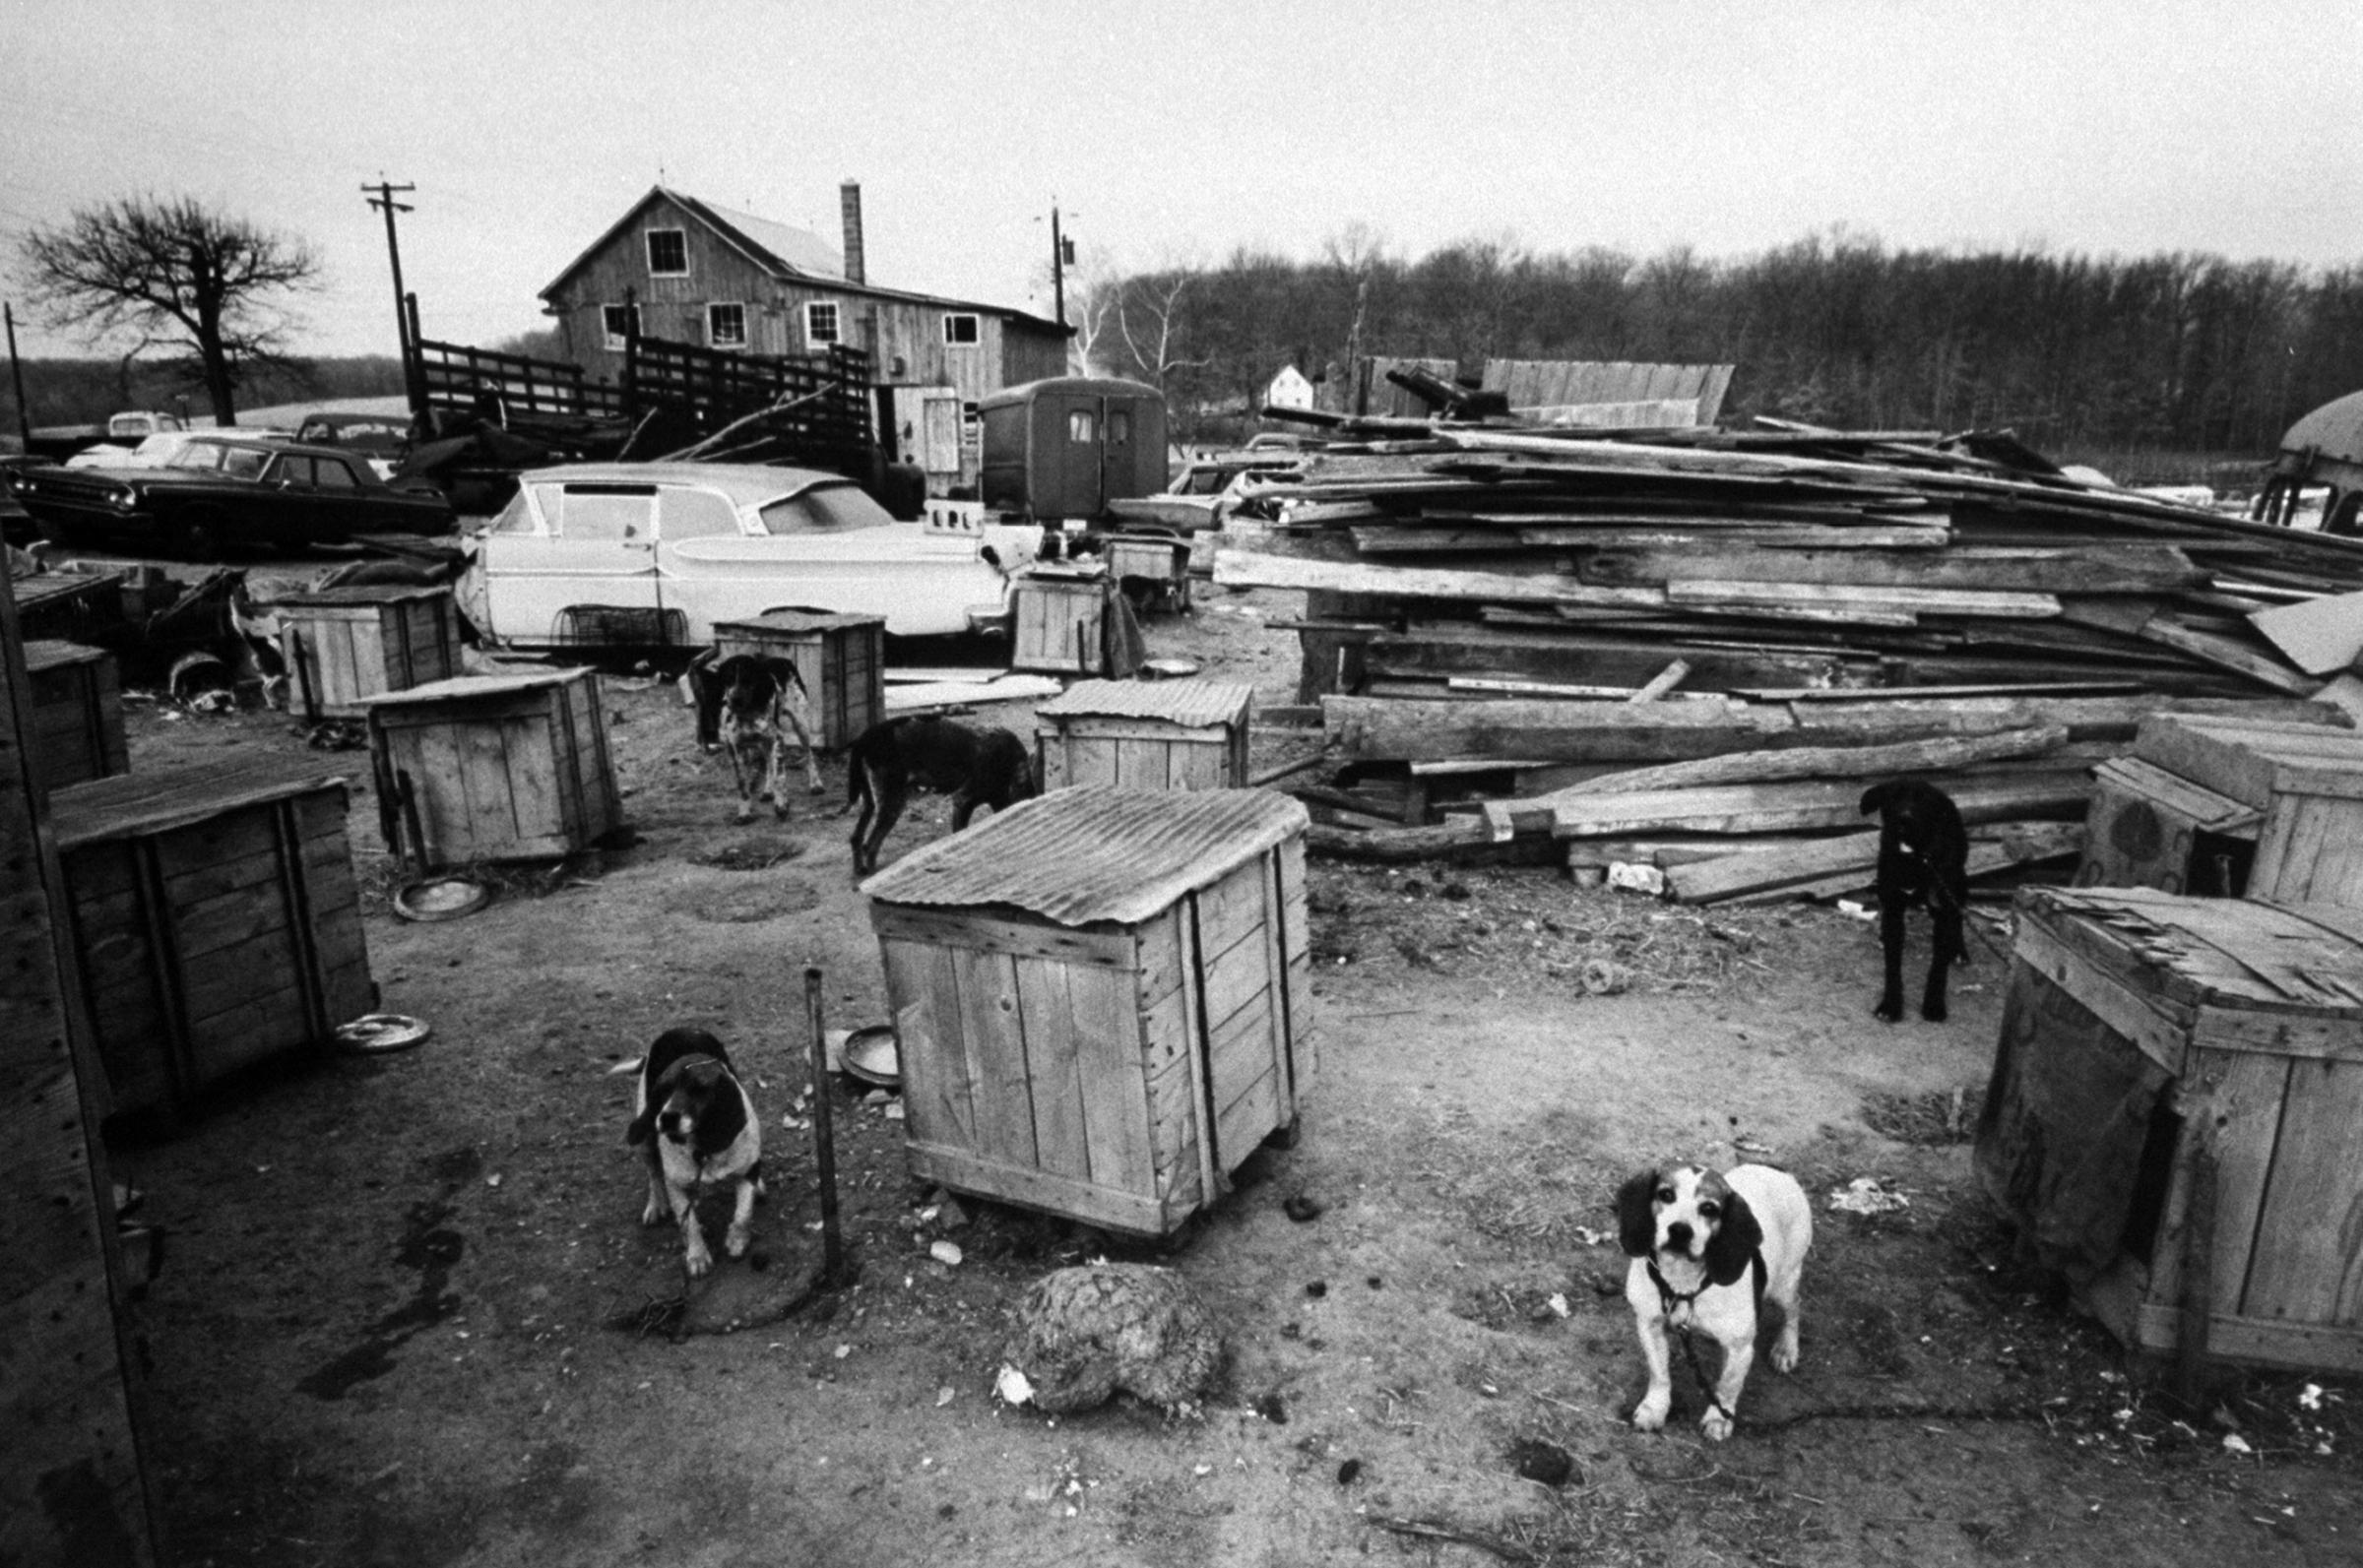 Grim scene at a dog dealer's compound, 1966.